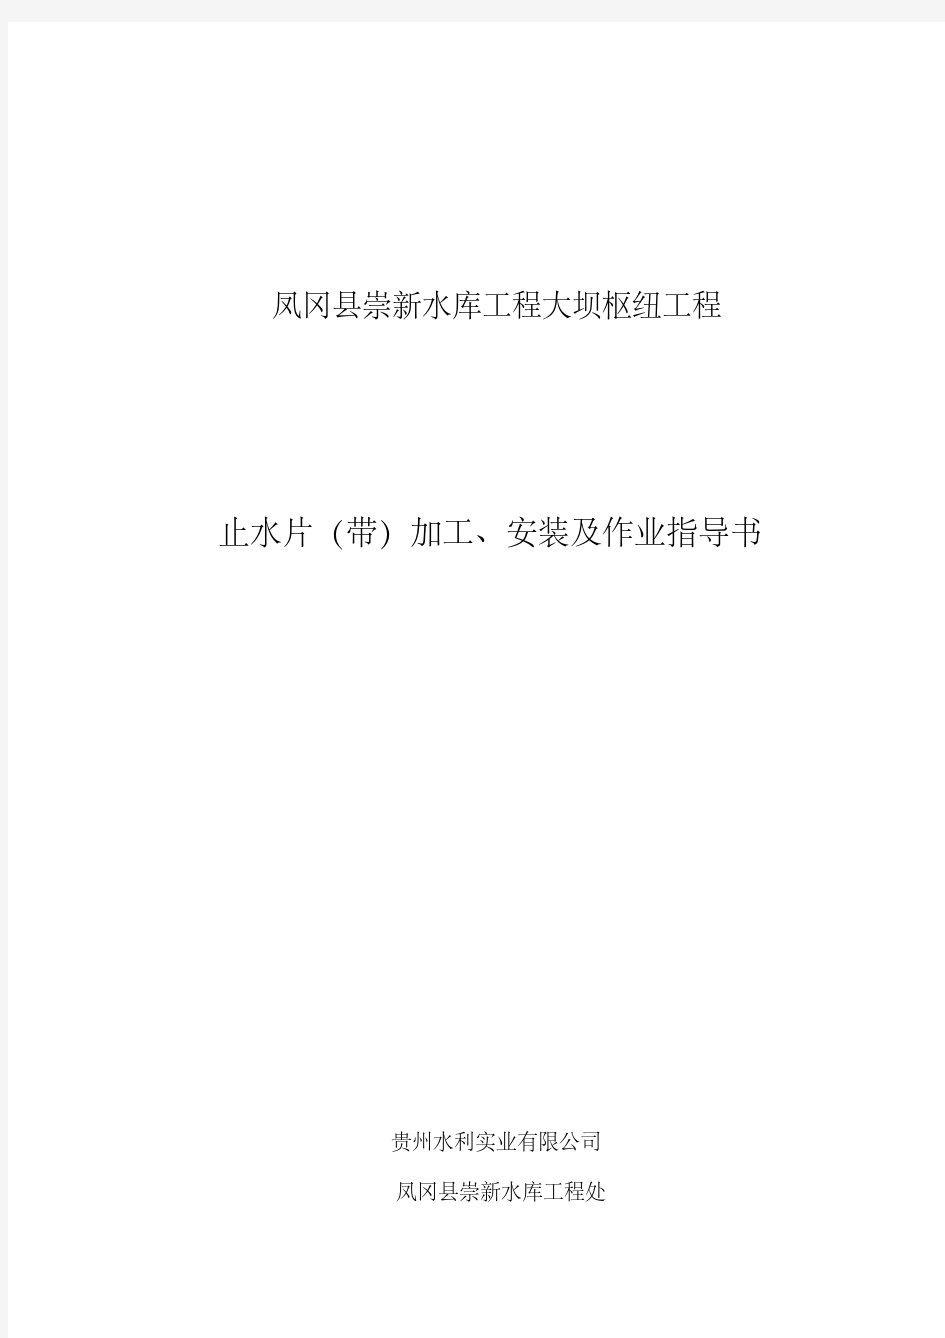 铜止水作业指导书(最终版)资料.pdf